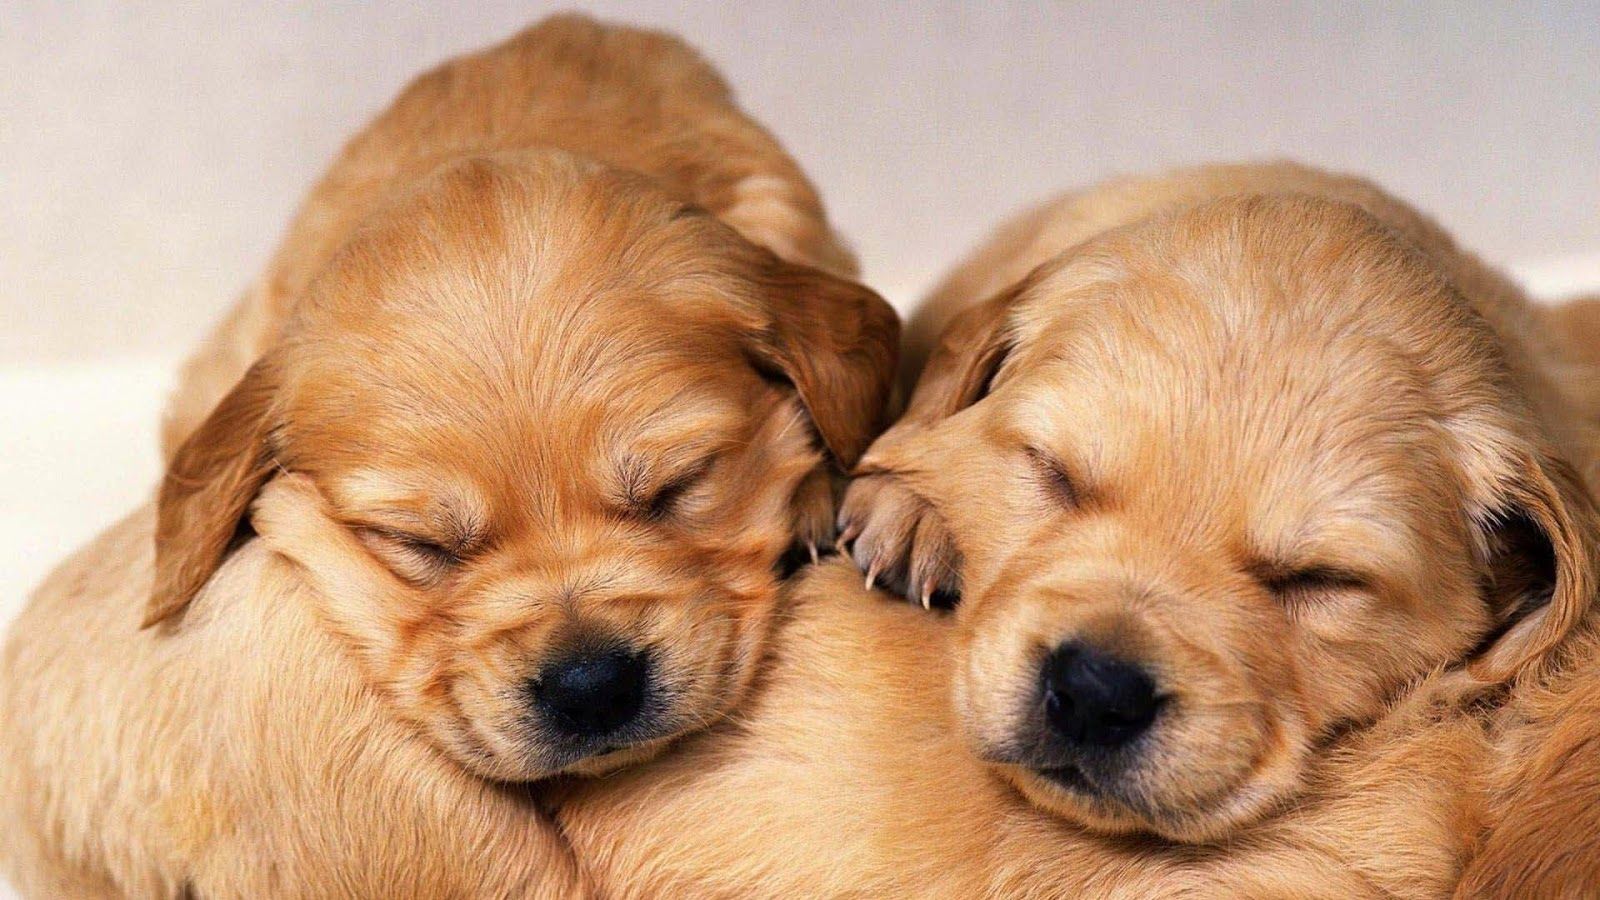 Cute Golden Retriever Puppies Wallpaper image. Retriever puppy